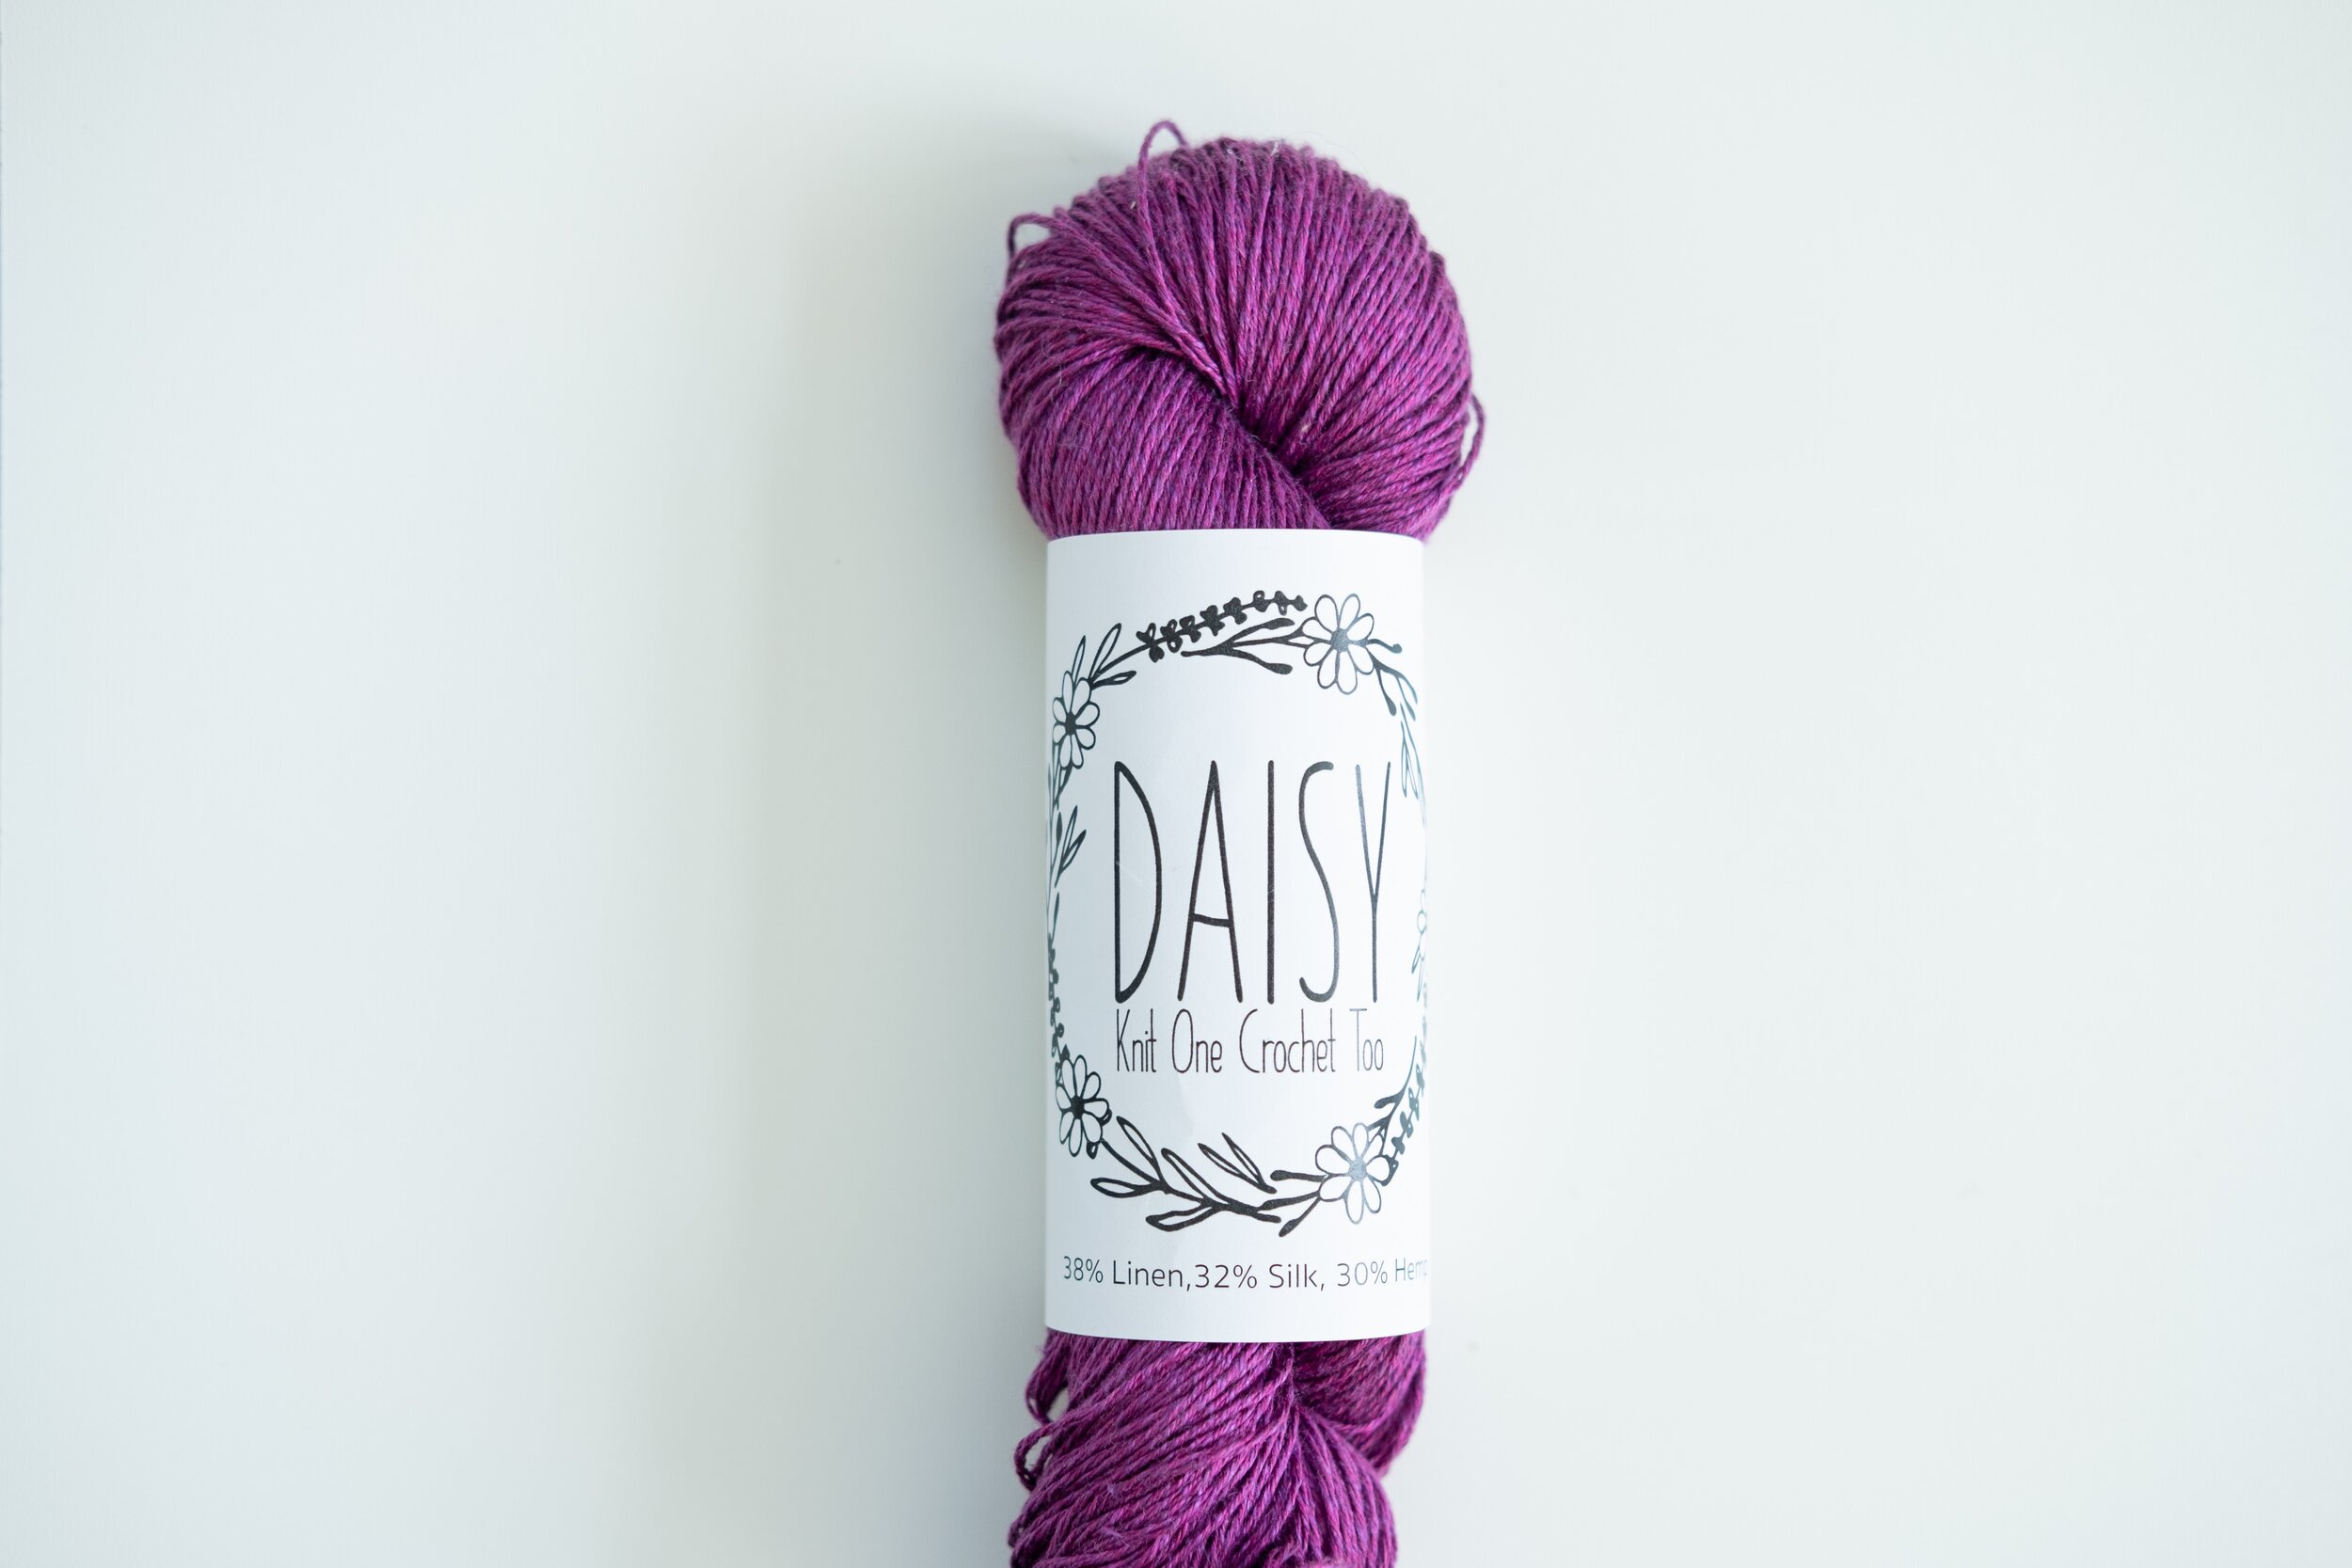 knit-one-crochet-too_daisy_small.jpg